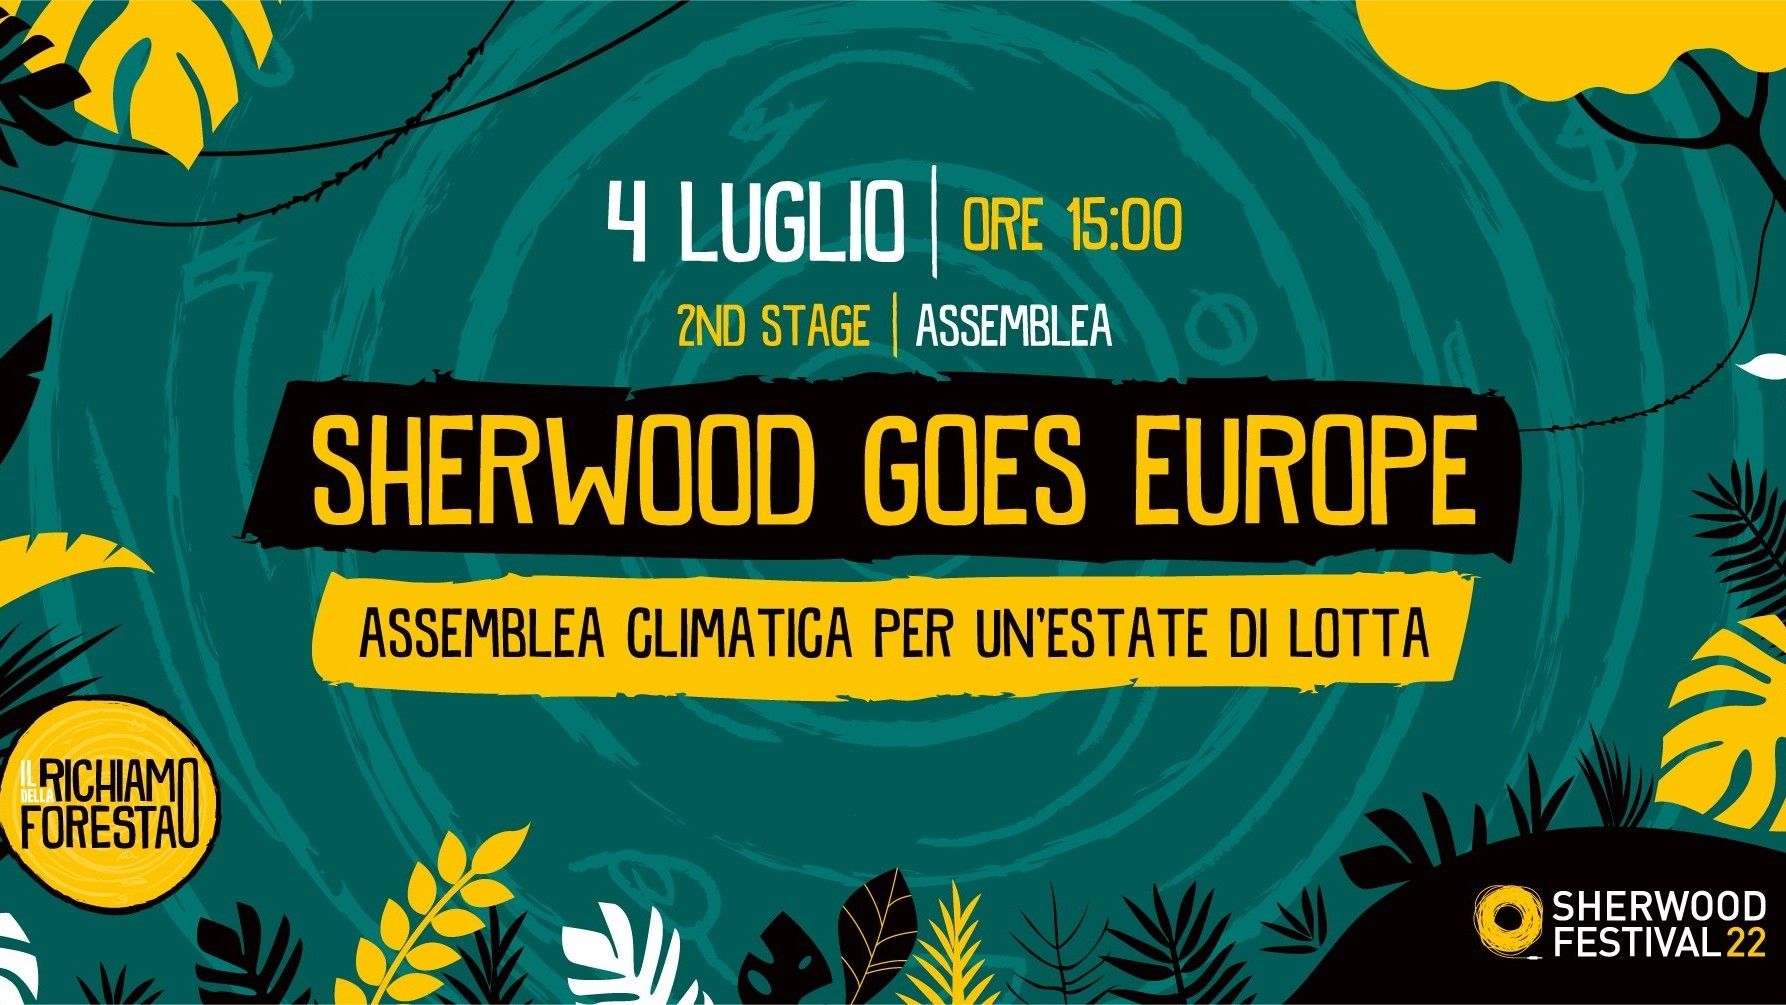 Sherwood Goes Europe, assemblea climatica per un’estate di lotta